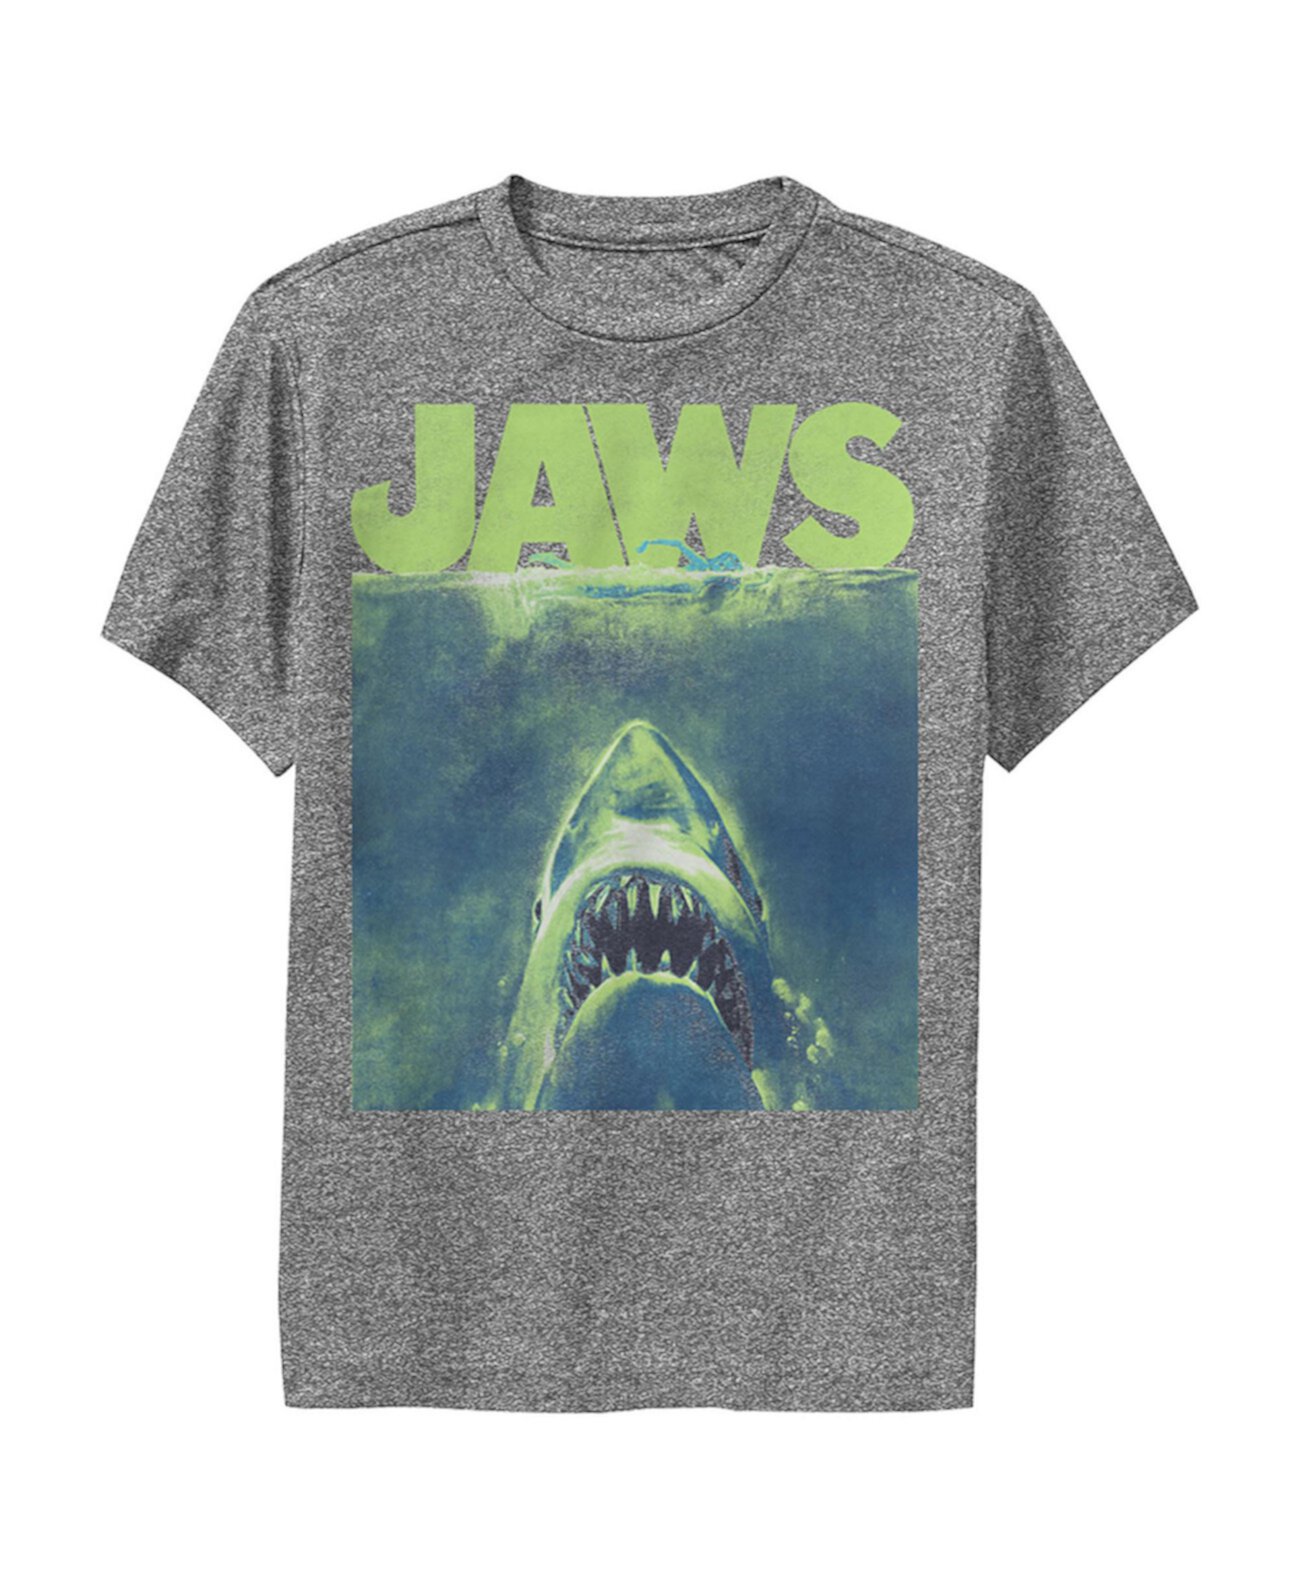 Детская футболка с неоновым плакатом Boy's Jaws NBC Universal